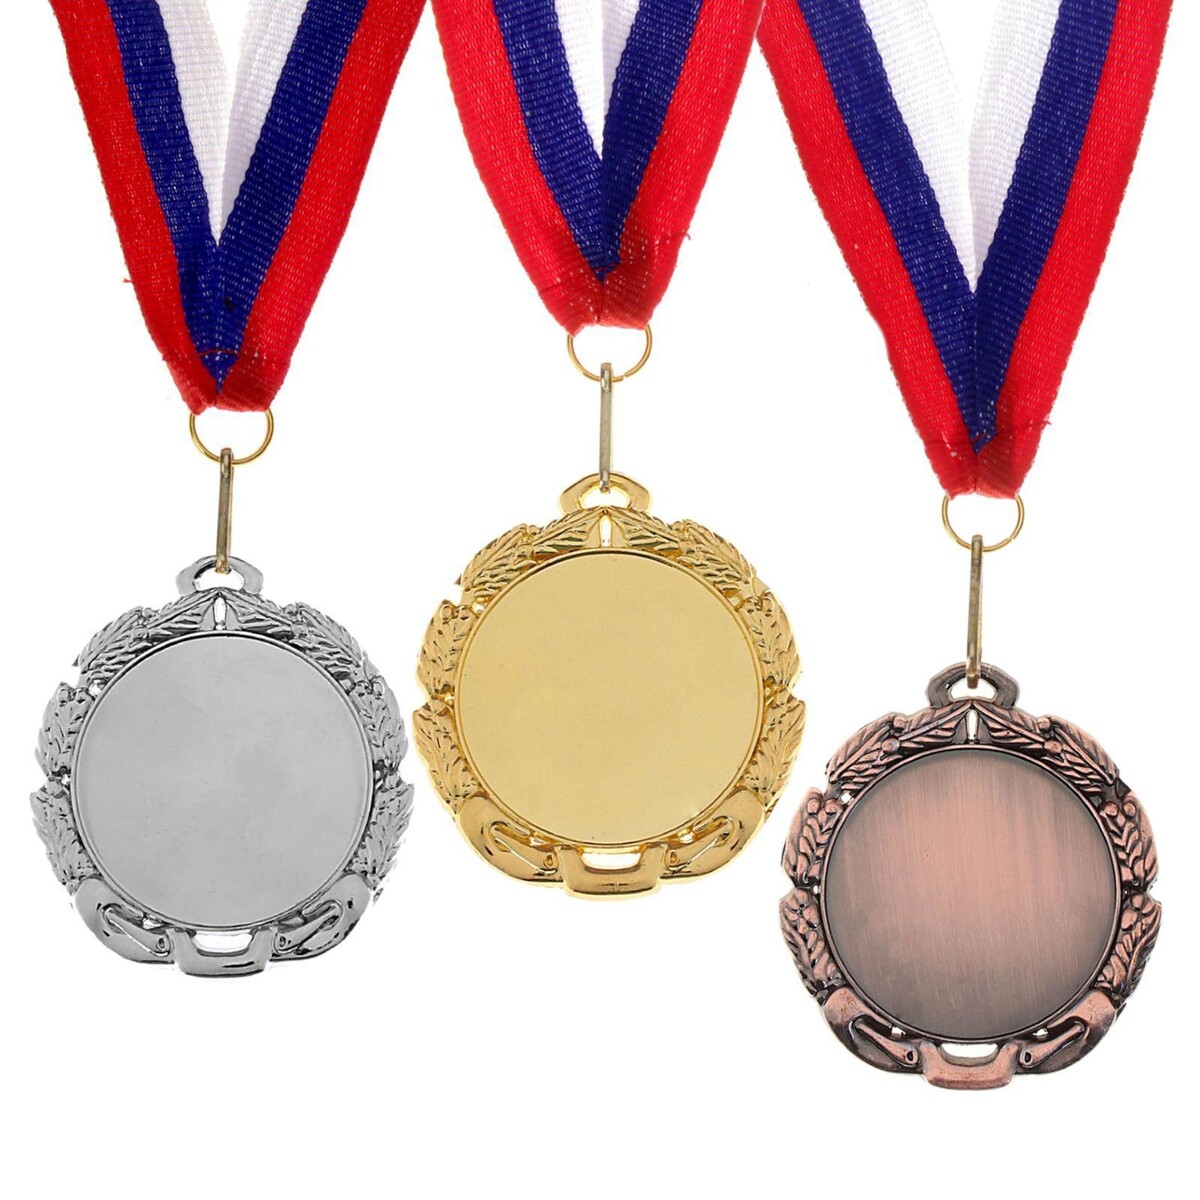 Медаль под нанесение 009 диам 7 см. цвет зол. с лентой медаль под нанесение 009 диам 7 см бронз с лентой